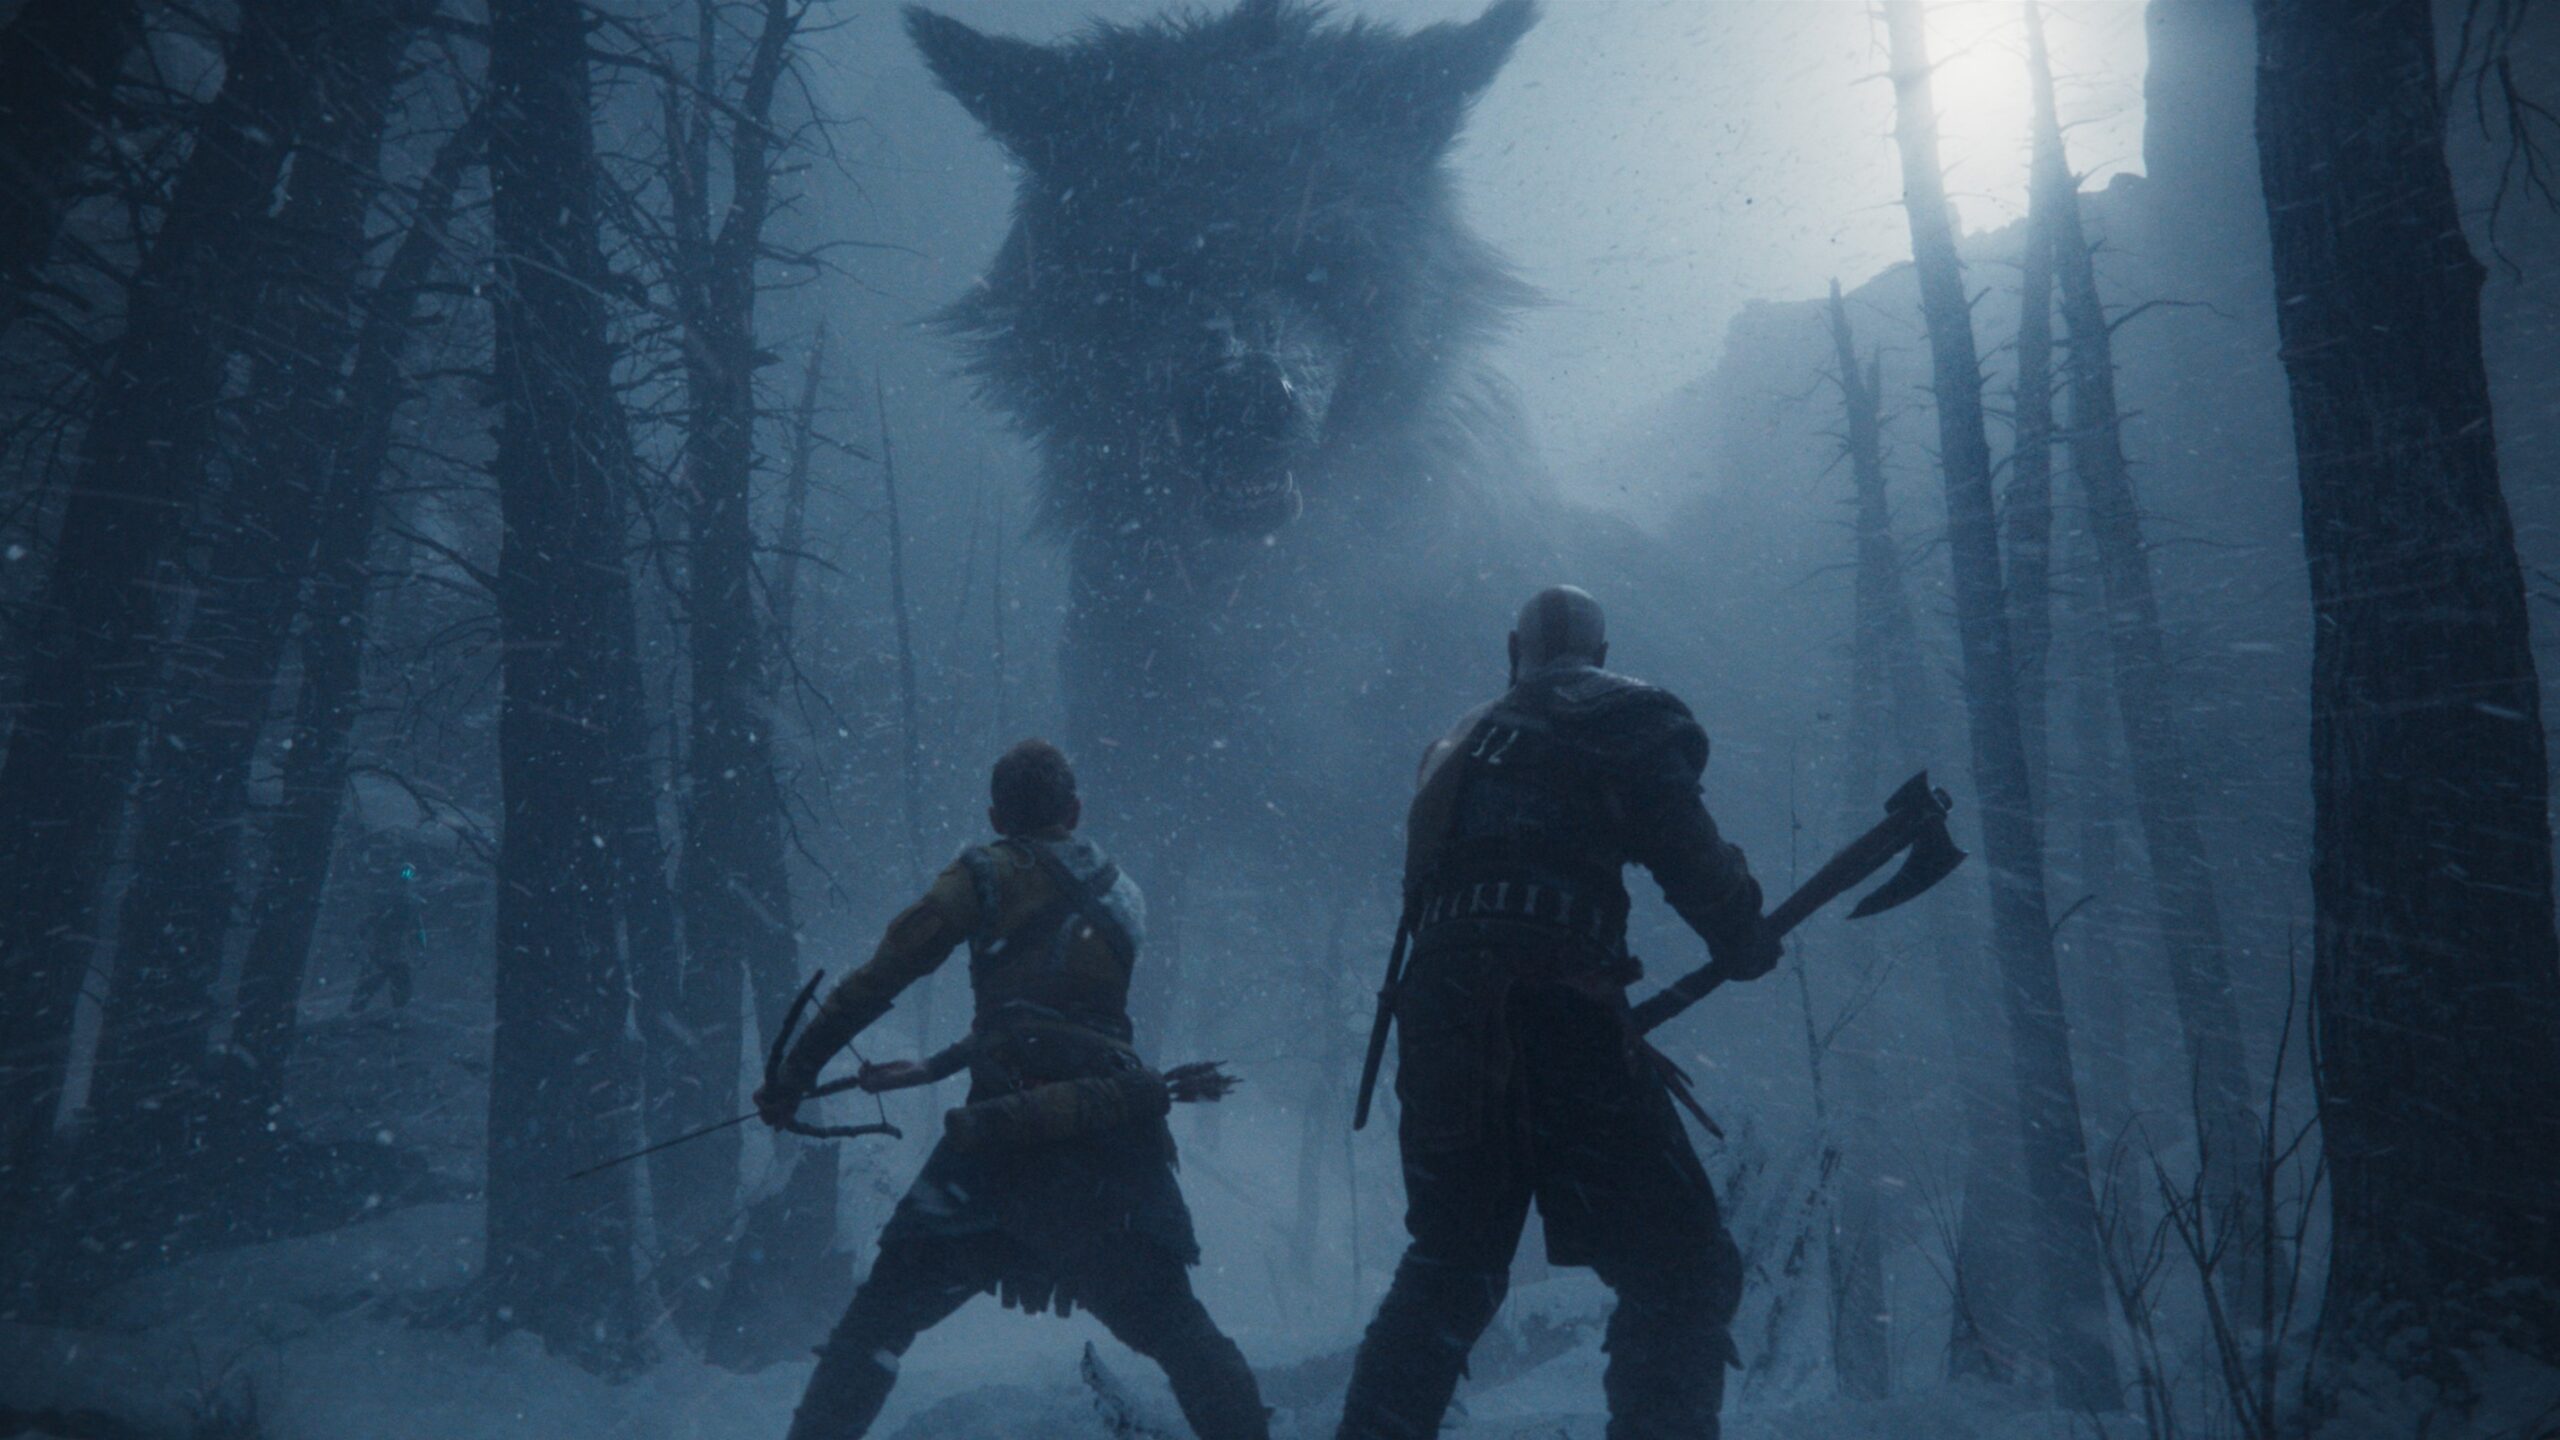 God of War Ragnarök launches November new CG trailer revealed